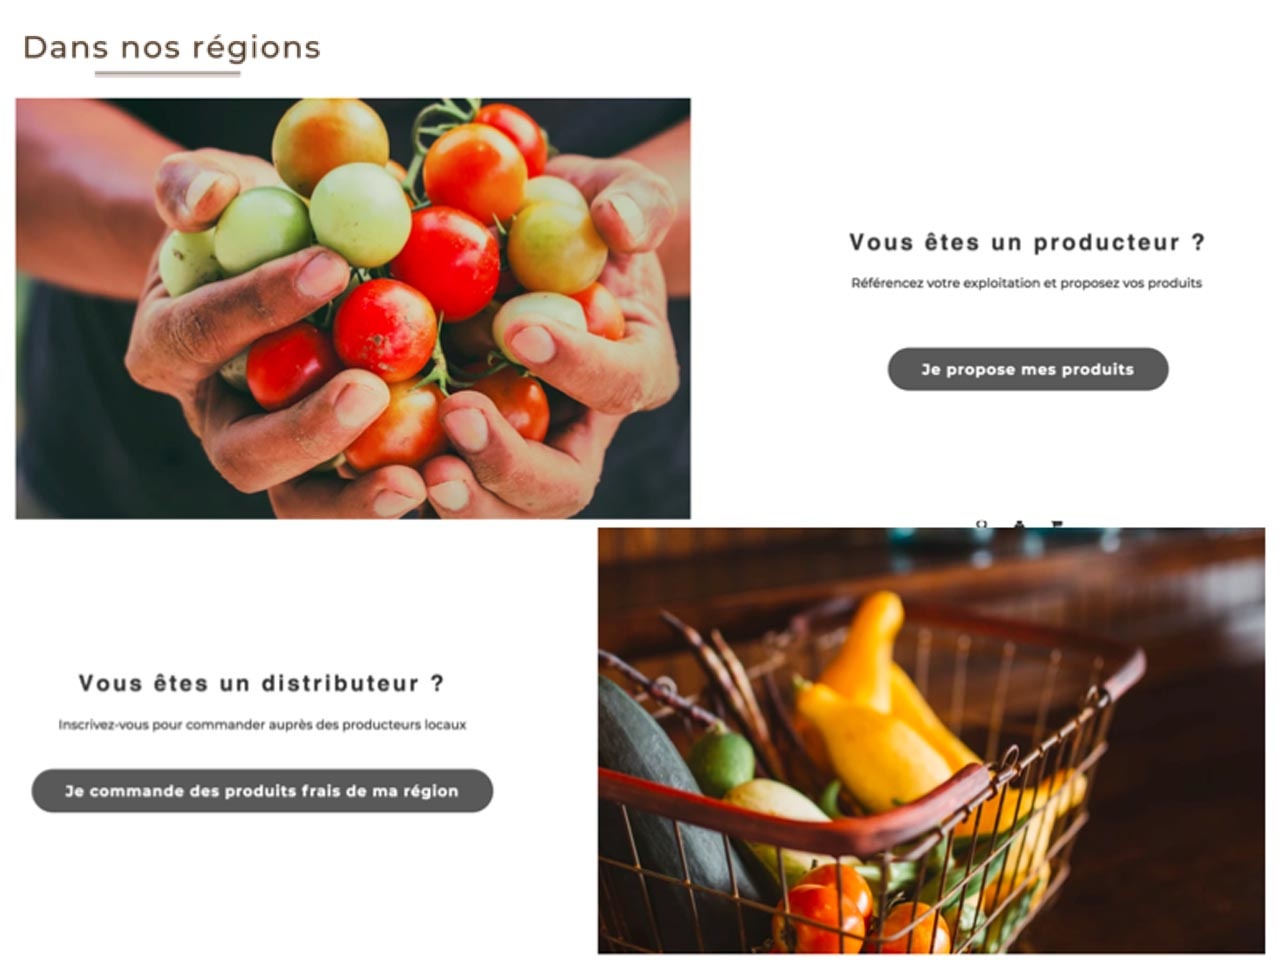 Dansnosregions.fr : lancement d’une plateforme B2B dédiée aux producteurs locaux et distributeurs